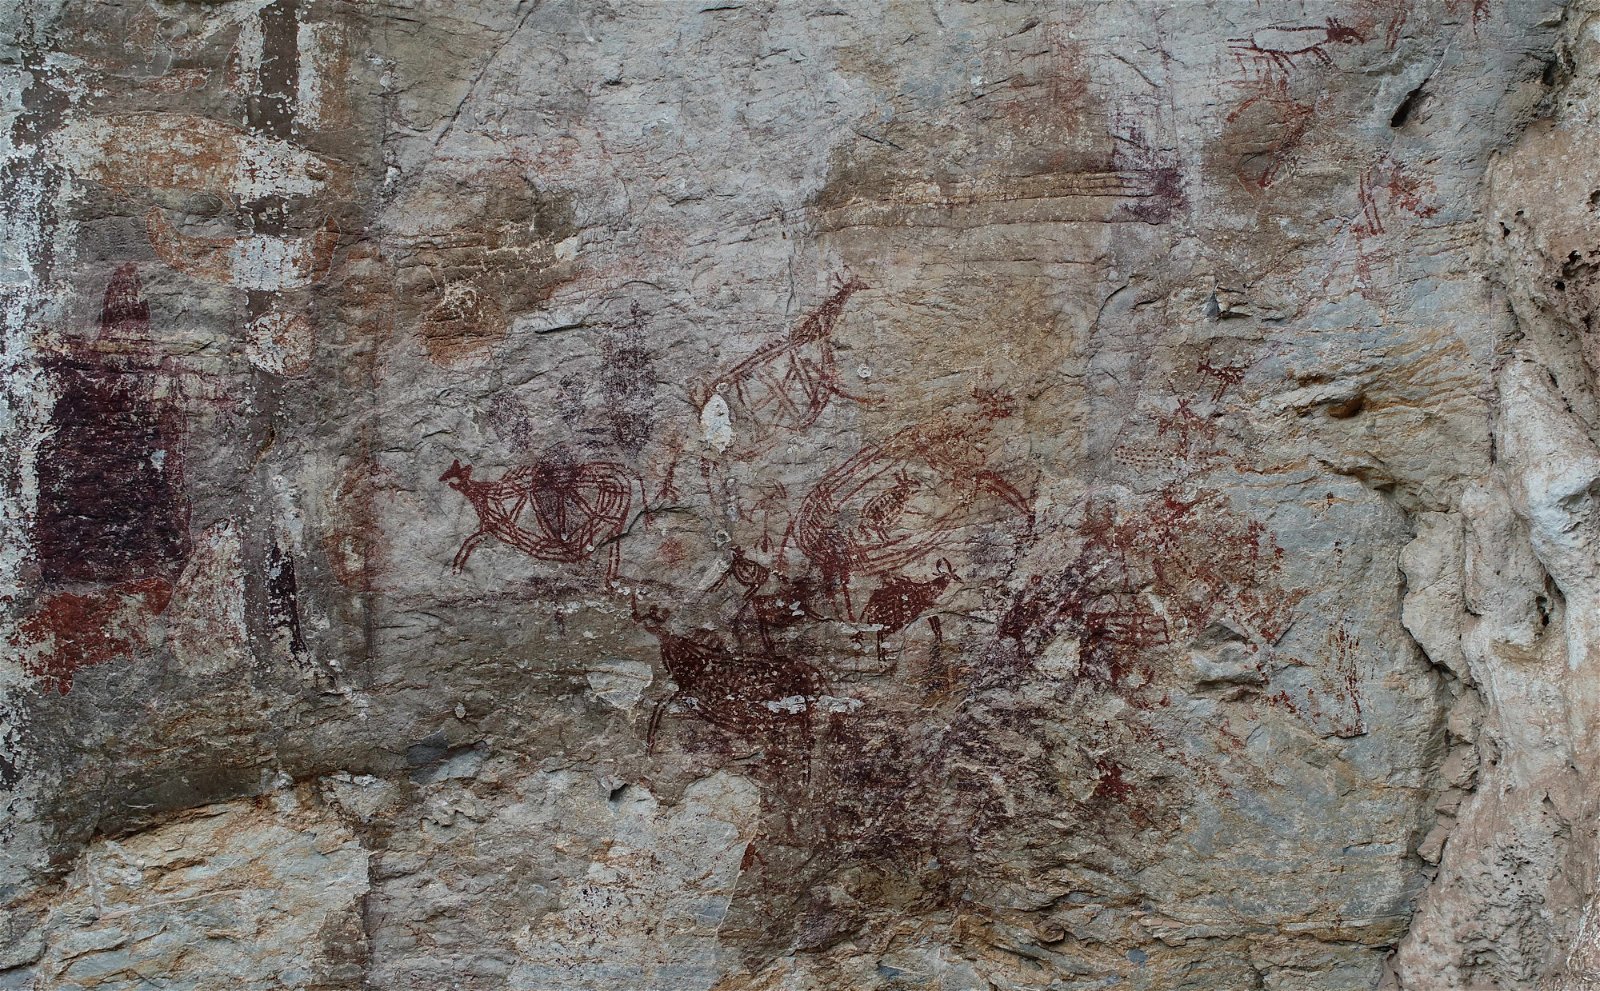 打扪洞红岩画是近打谷最早被发现的尚存红岩画，为我国唯一因红岩画而在2010年获得颁布国家文化遗产的洞穴。